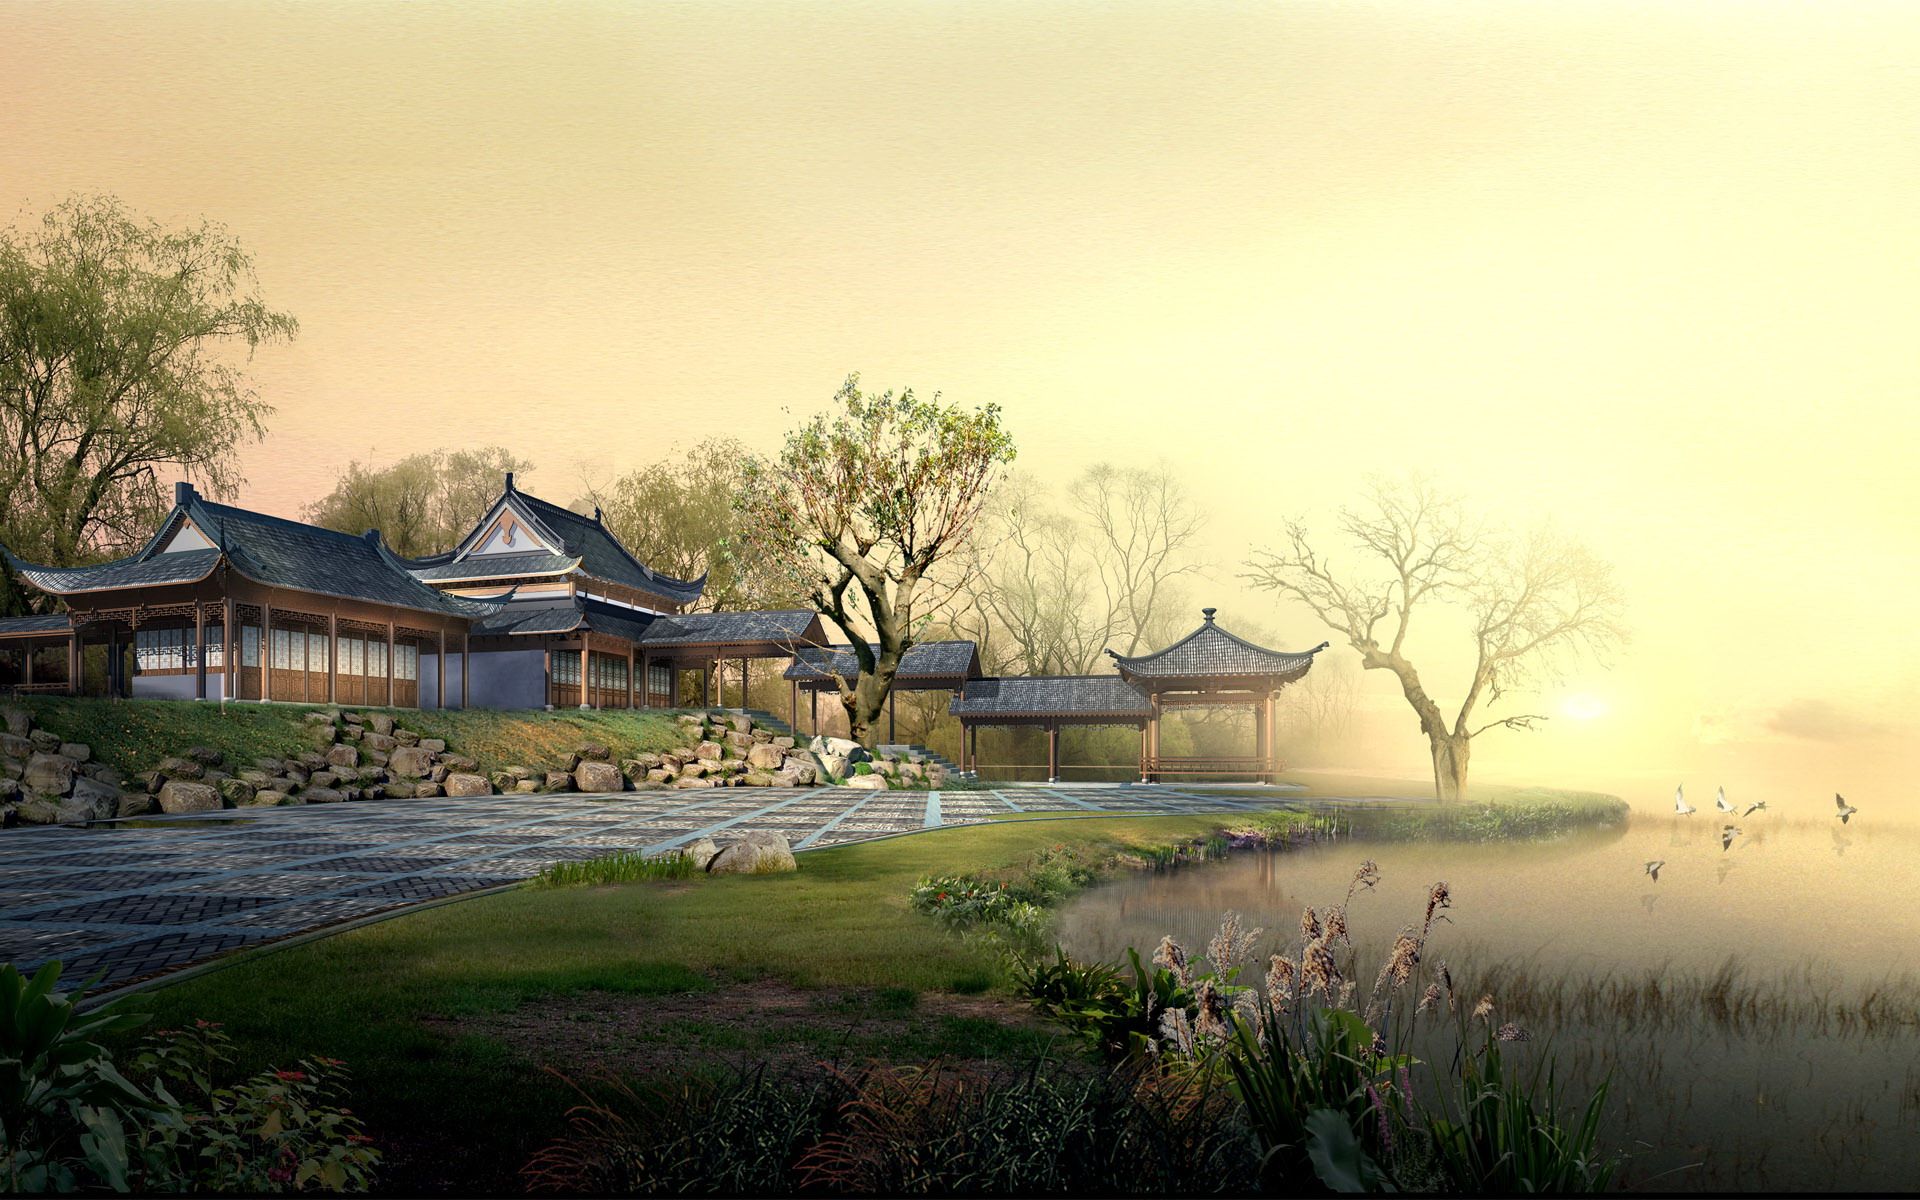 Bạn sẵn sàng khám phá tuyệt đẹp Chinese Landscape Wallpapers? Với tông màu trầm và phong cảnh đặc trưng, chúng tôi sẽ giúp bạn thưởng thức những khoảnh khắc đẹp như mơ. Hãy để lòng tin chạm vào tầm vóc, cảm nhận vẻ đẹp tinh tế của nền văn hóa Trung Hoa.